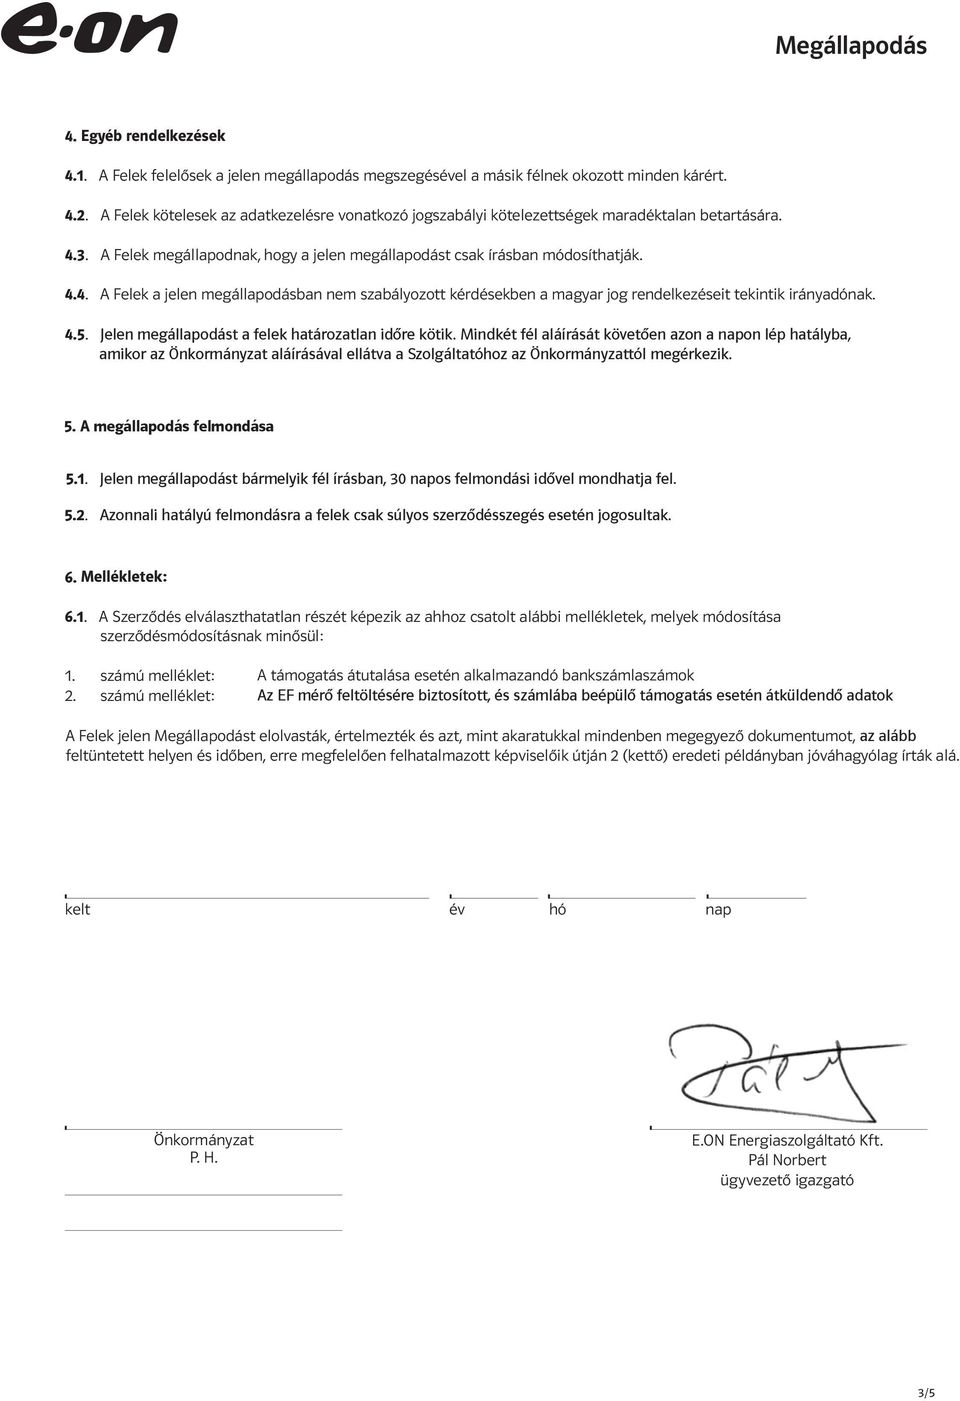 3. A Felek megállapodnak, hogy a jelen megállapodást csak írásban módosíthatják. 4.4. A Felek a jelen megállapodásban nem szabályozott kérdésekben a magyar jog rendelkezéseit tekintik irányadónak. 4.5.